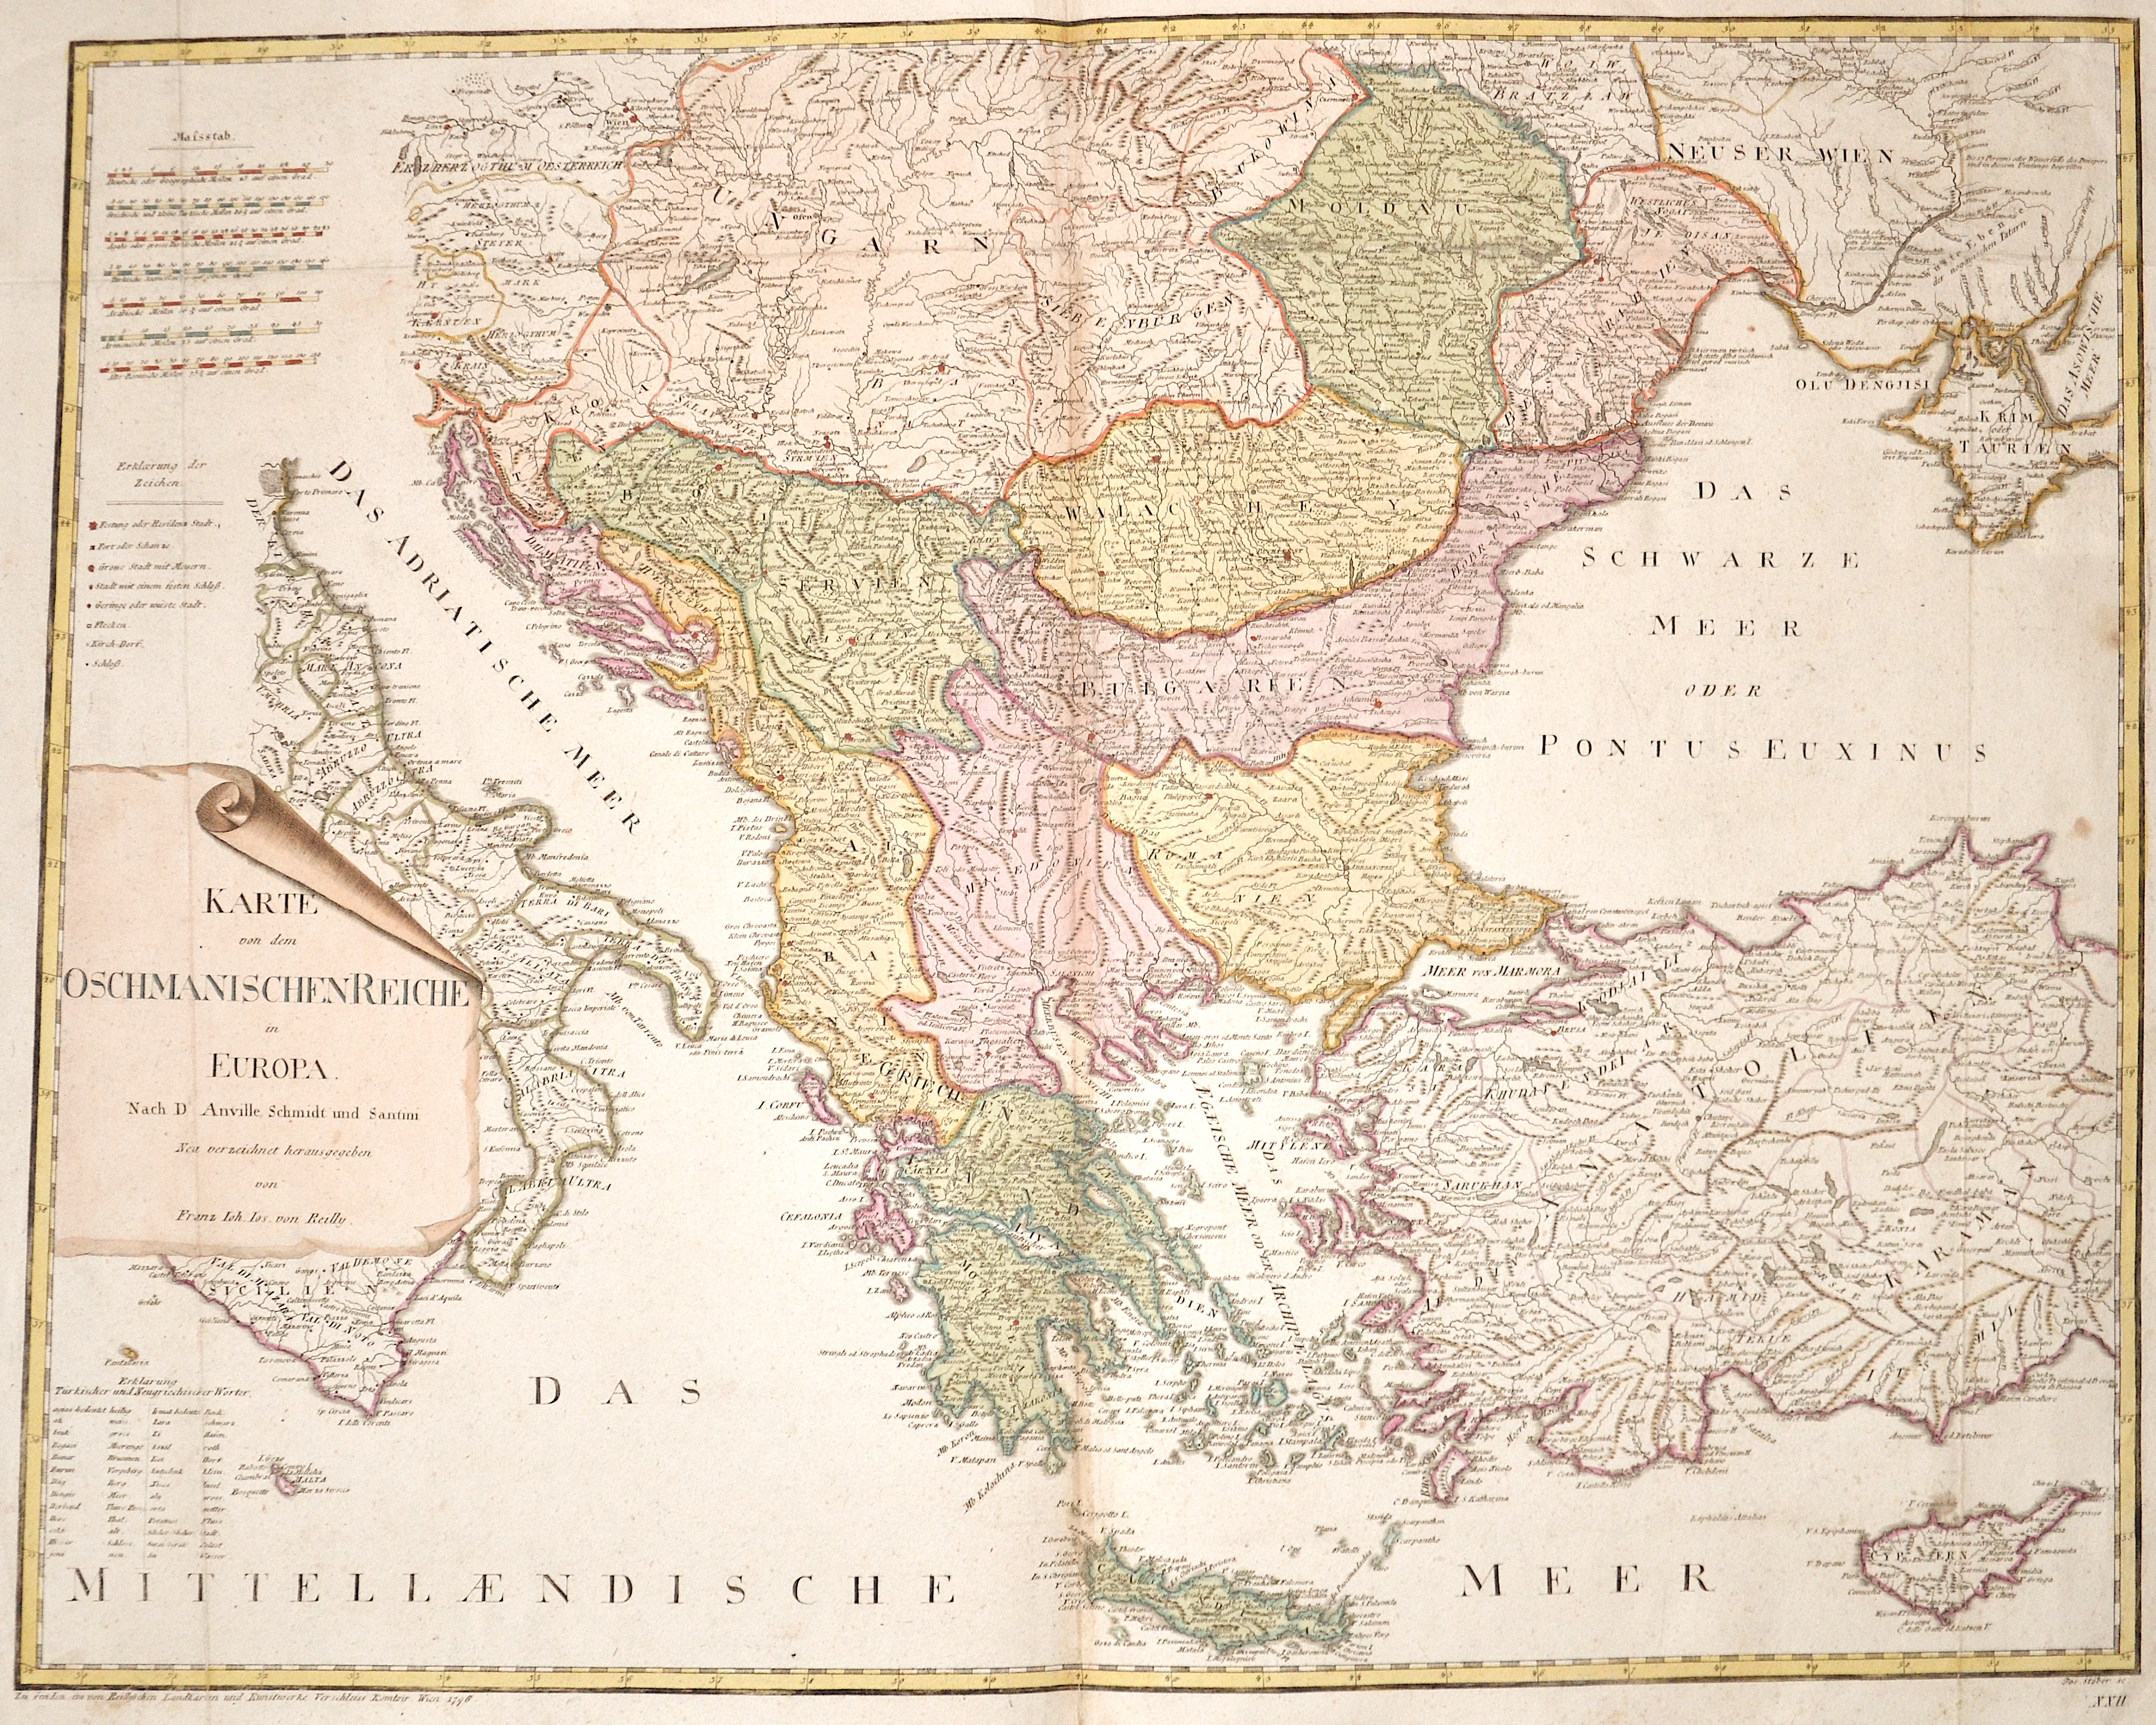 Reilly  Karte von dem Osmanischen Reiche in Europa